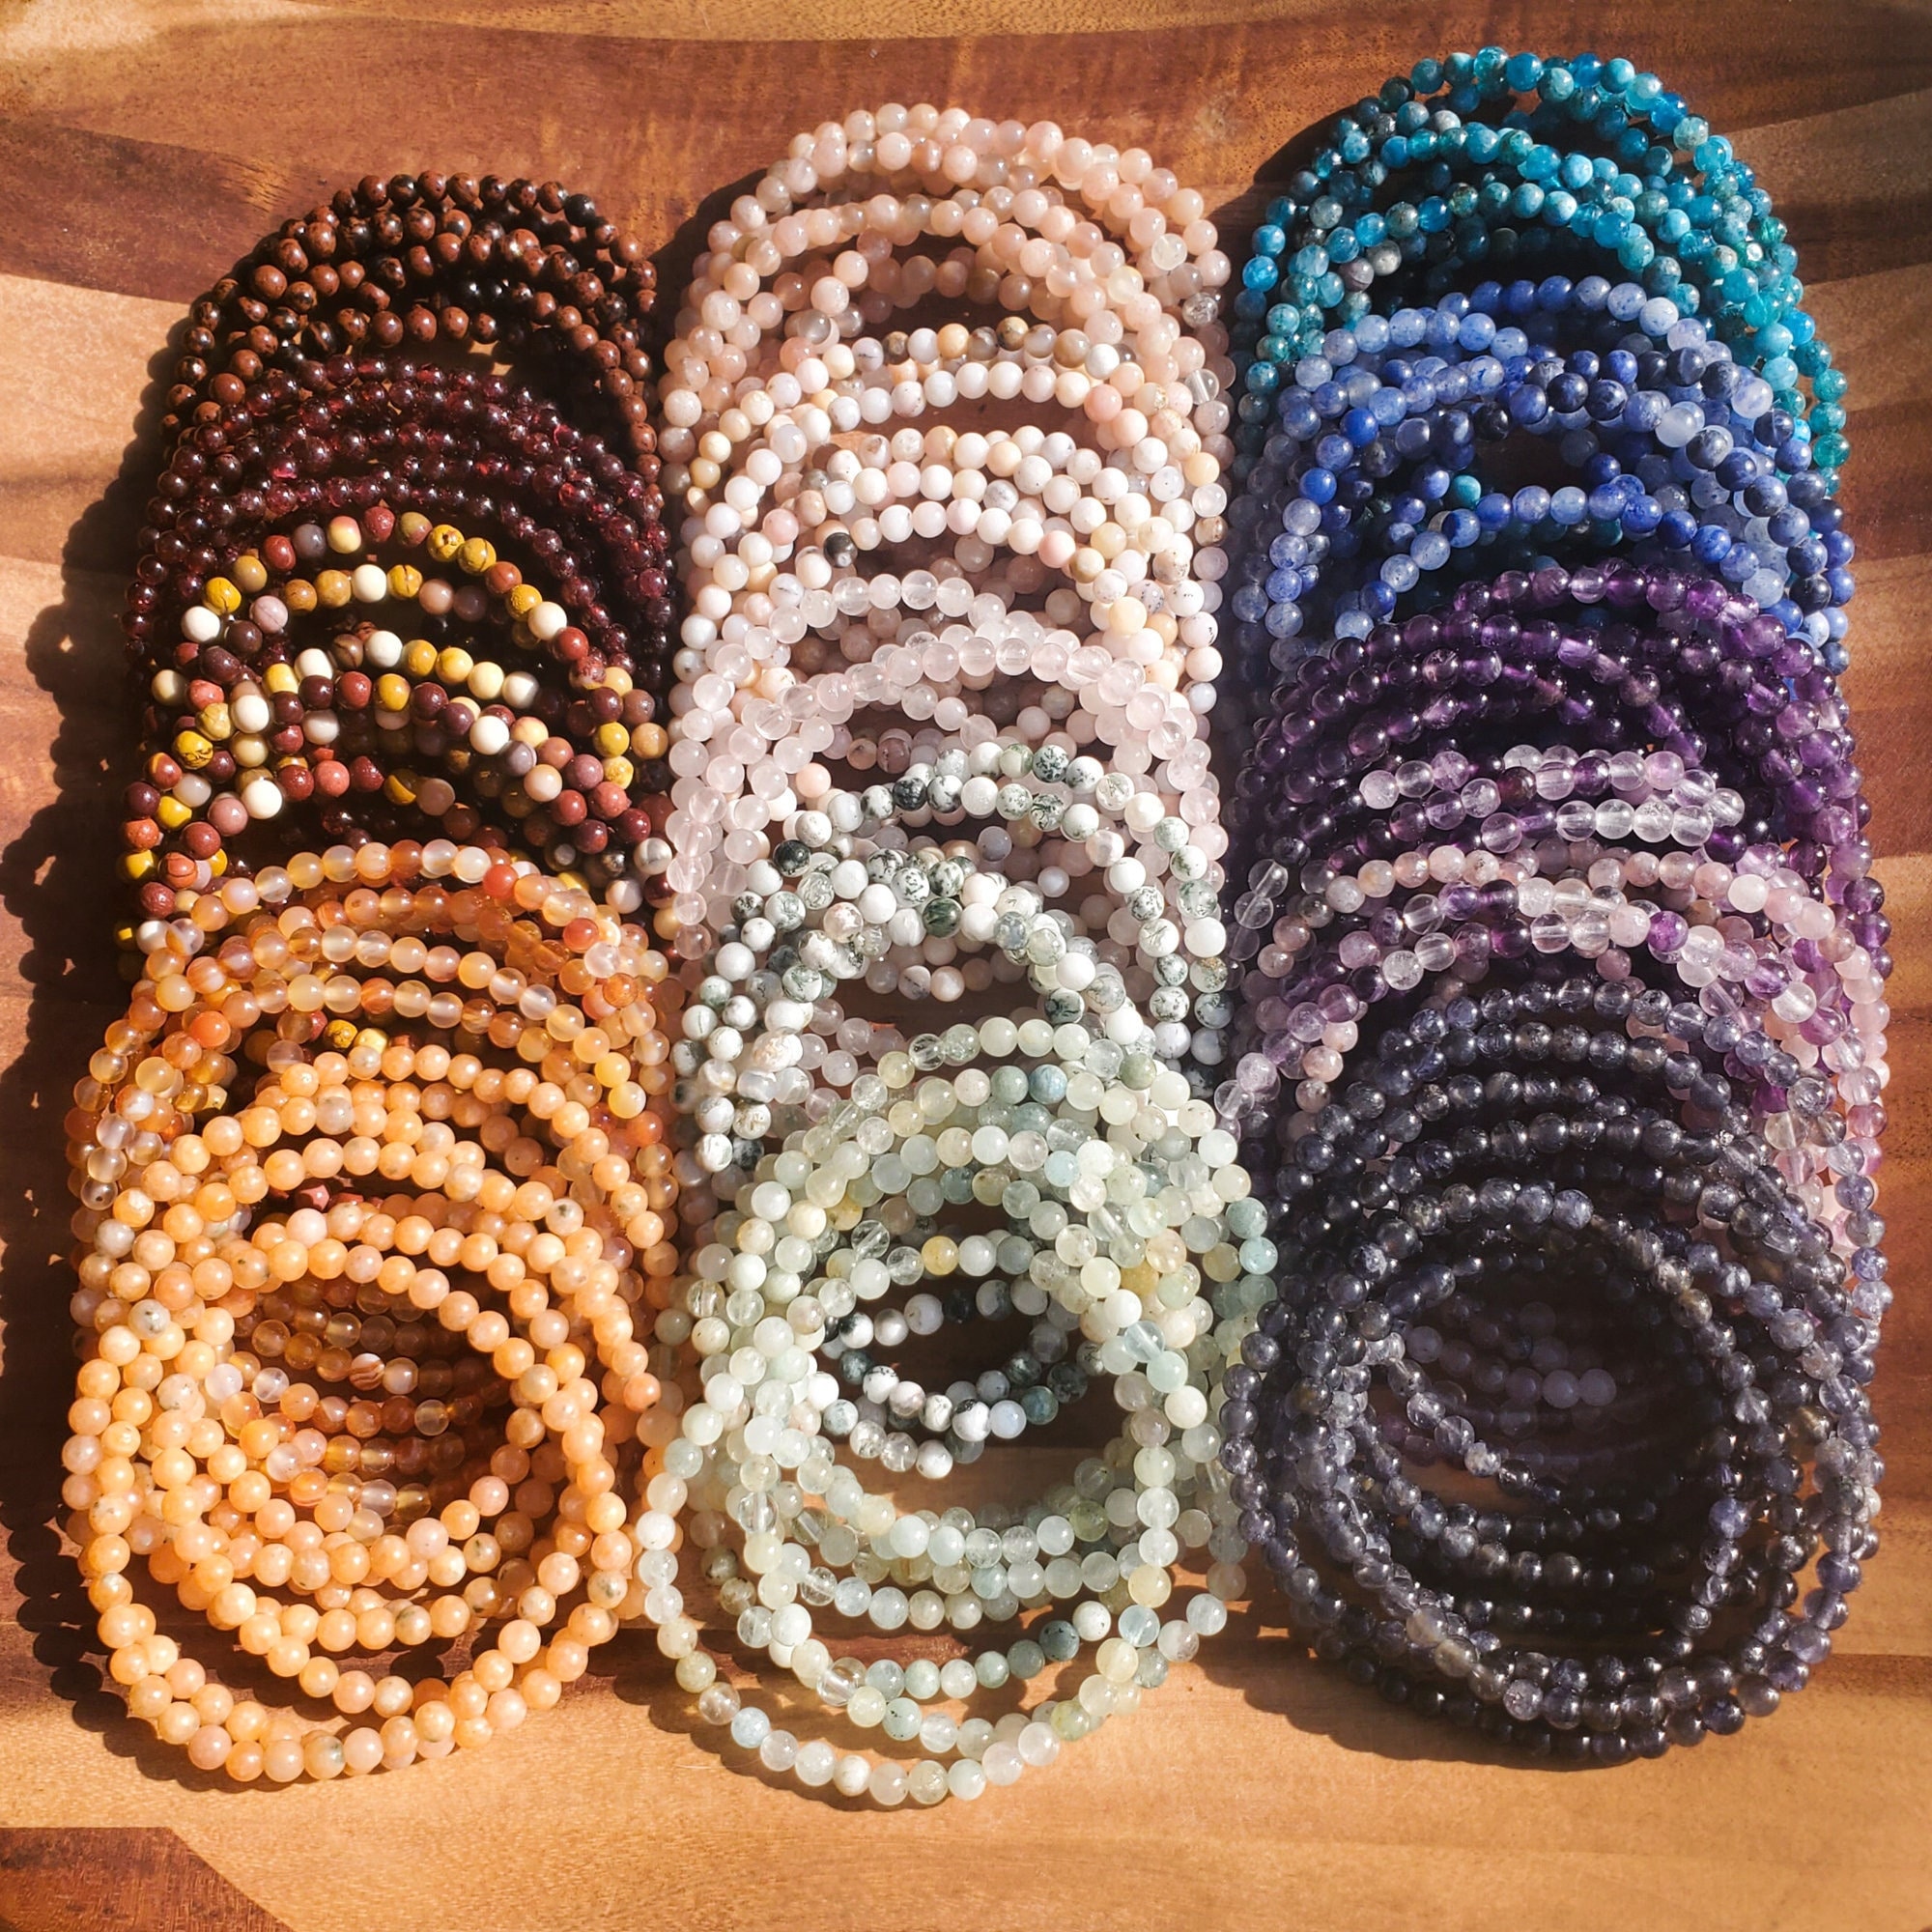 Gemstone 8 mm Bead Bracelets: BUY 3 GET 1 FREE - Huge Variety 8 mm Rounded  Stone Natural Crystal Bracelets (Premium Grade Stretch Bracelet)